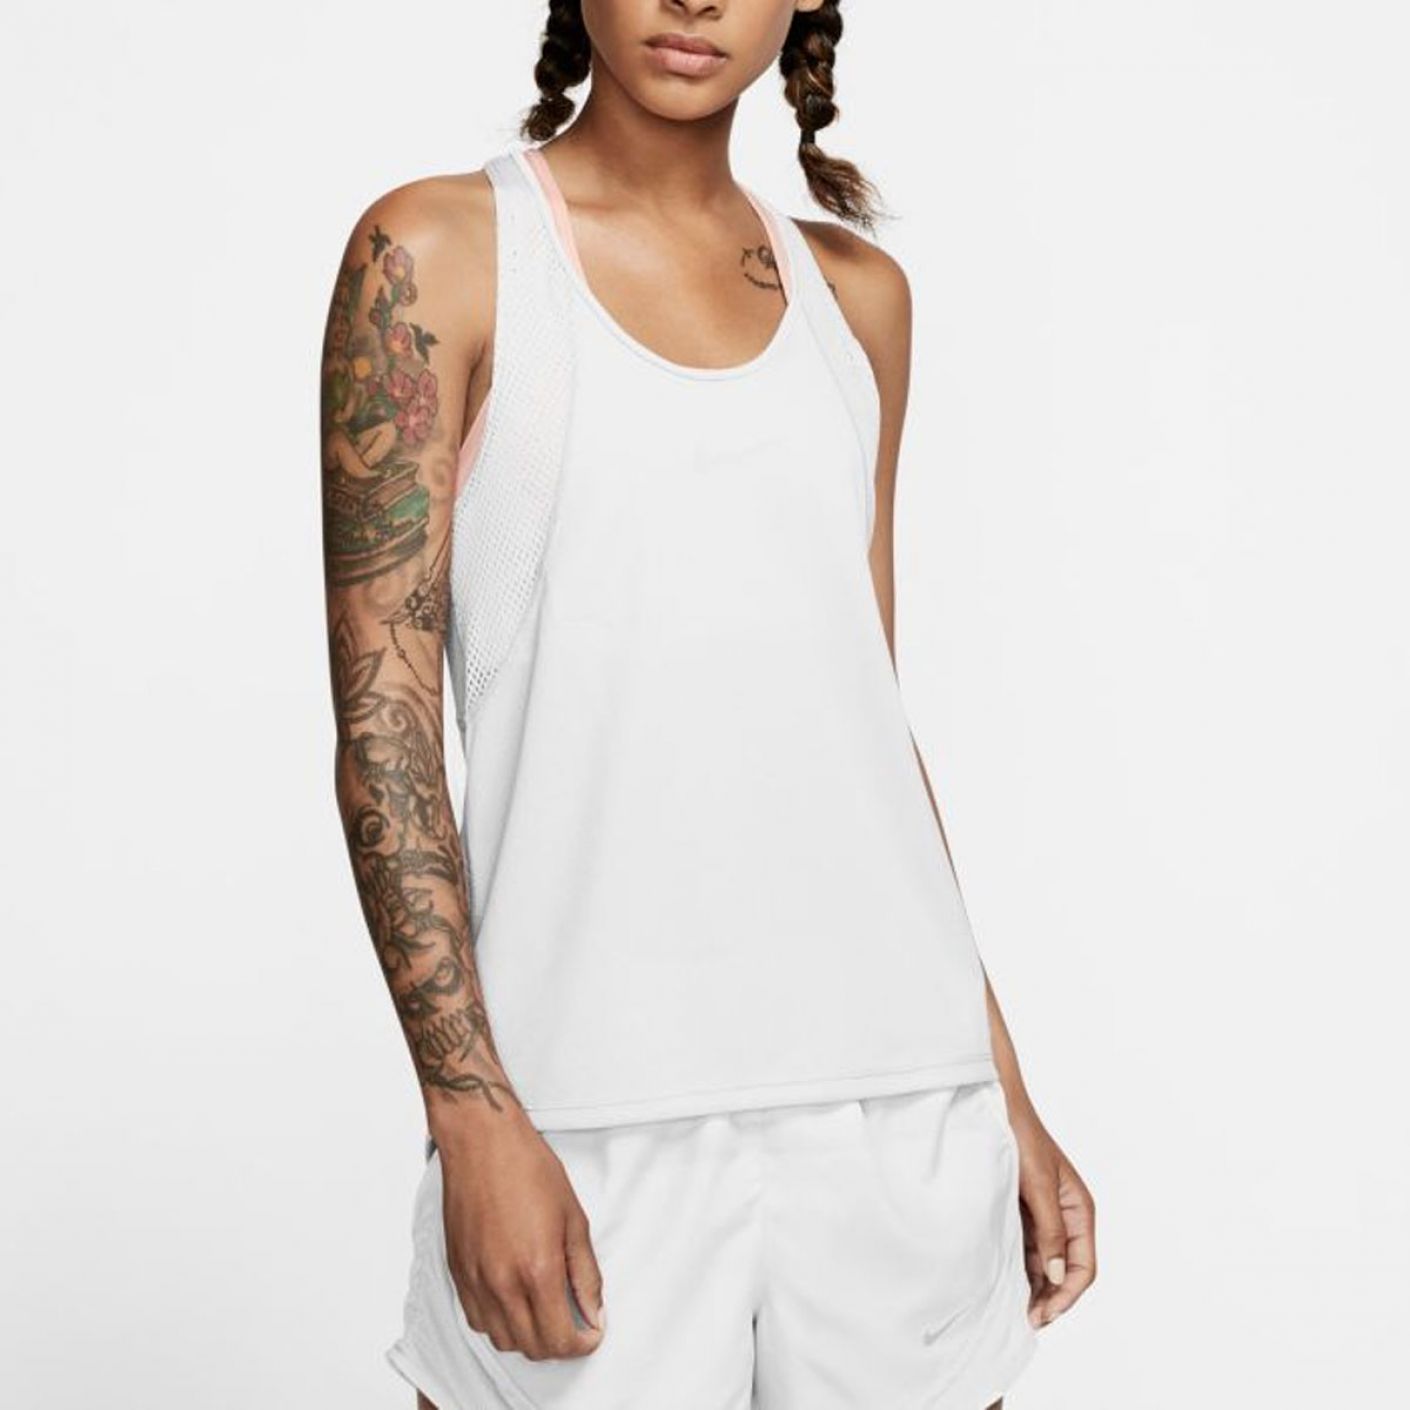 Nike Women's White Running Tank